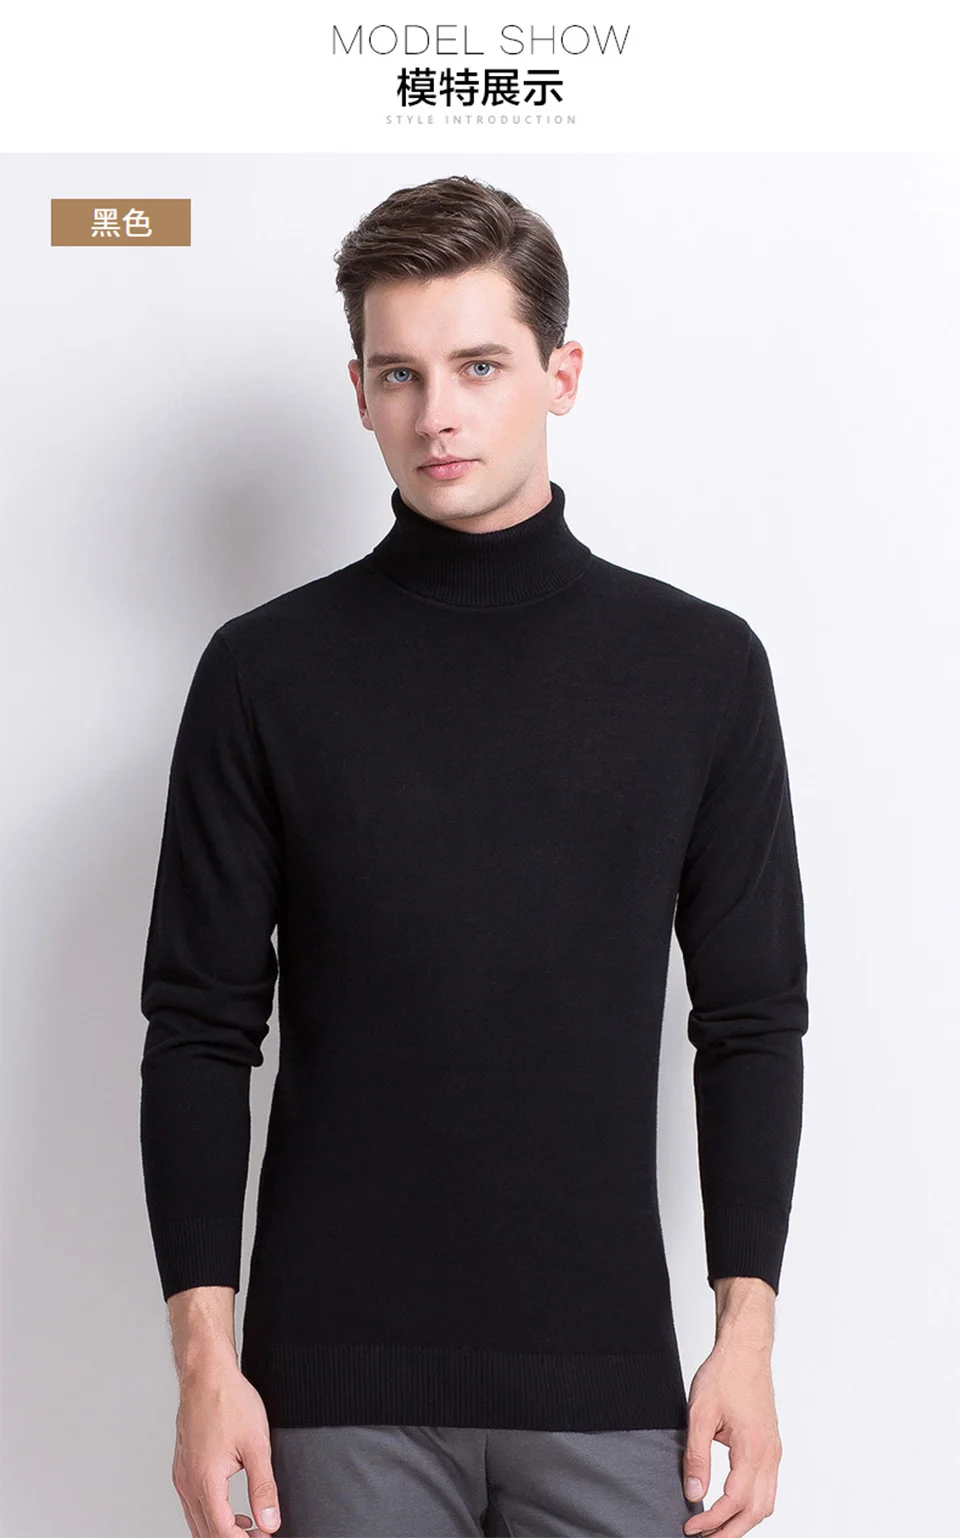 Мужская водолазка свитер 2019 осень зима сплошной цвет свитер повседневный мужской свитер мужской Slim Fit бренд вязаный твист пуловеры